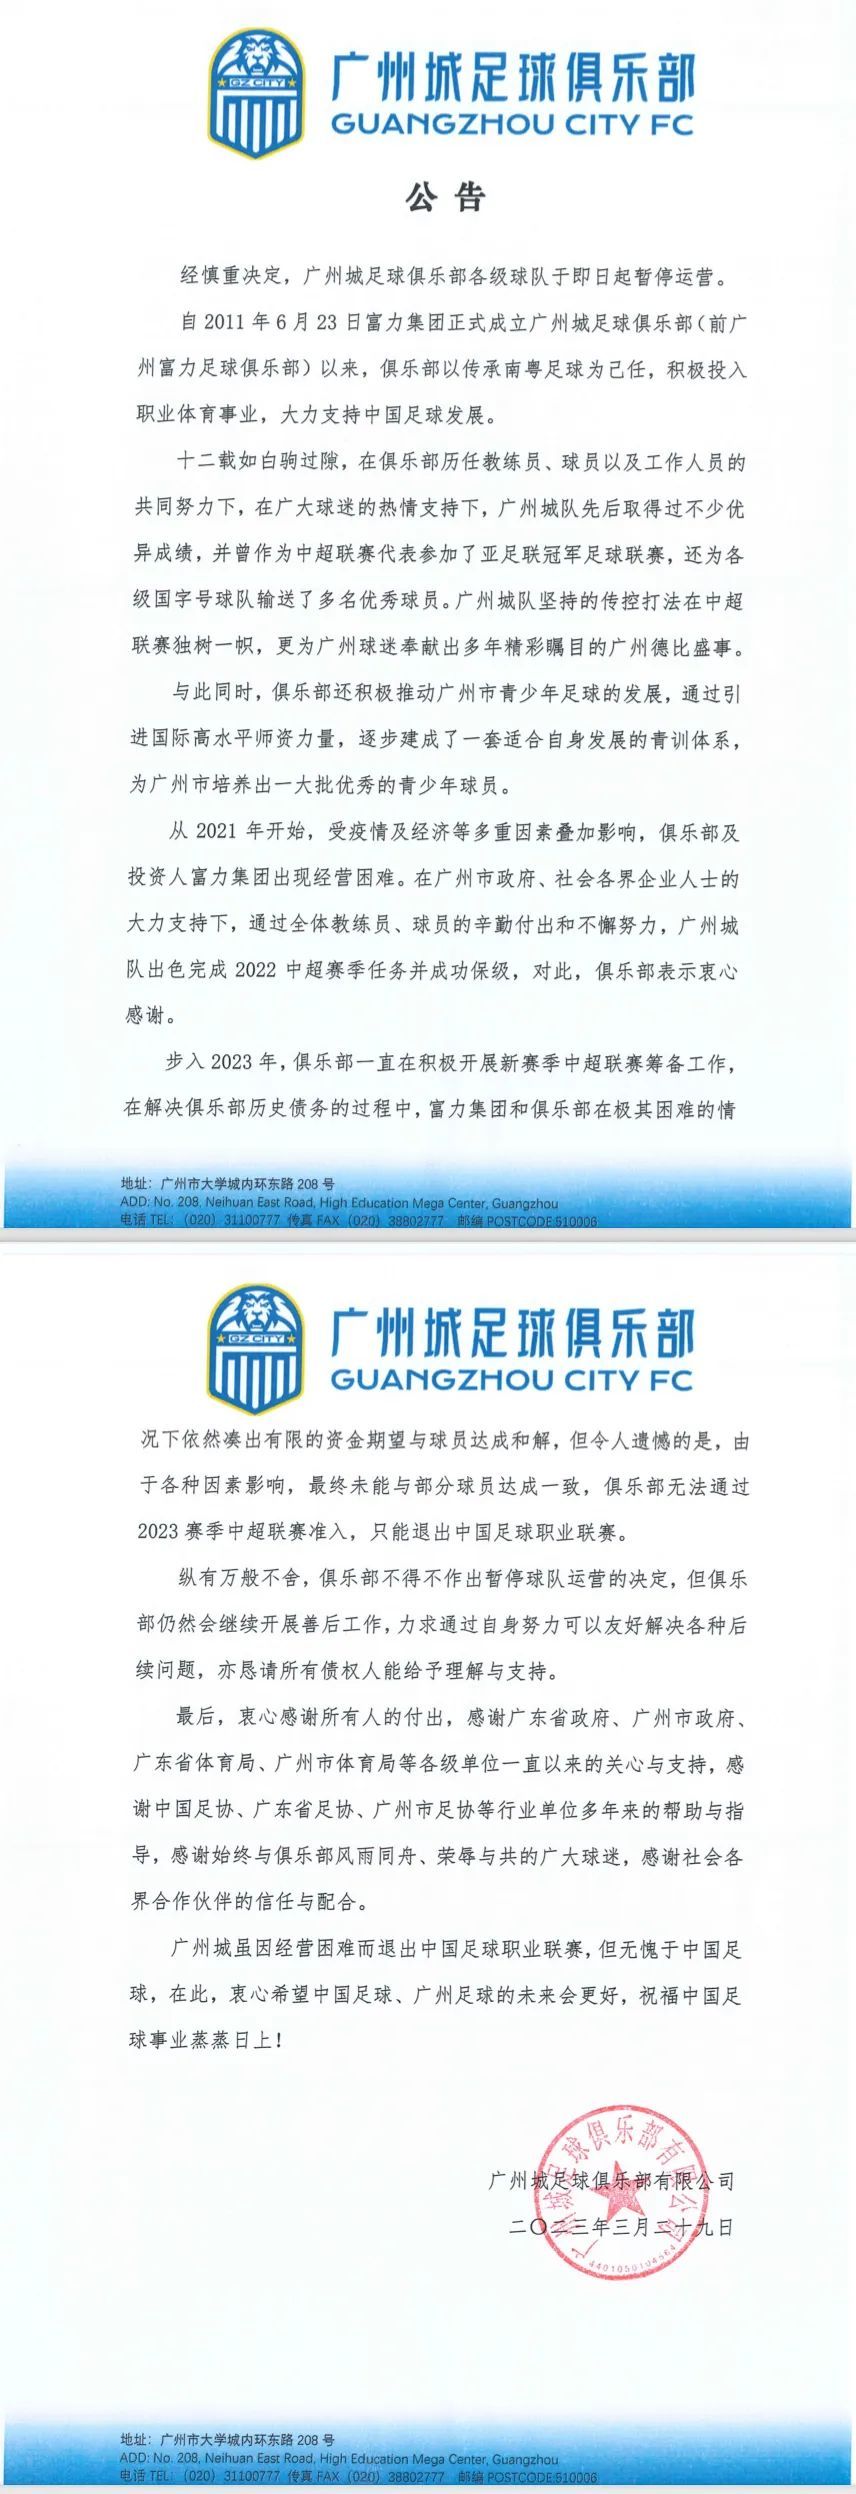 广州城足球俱乐部宣布即日起暂停运营 广州市体育局回应